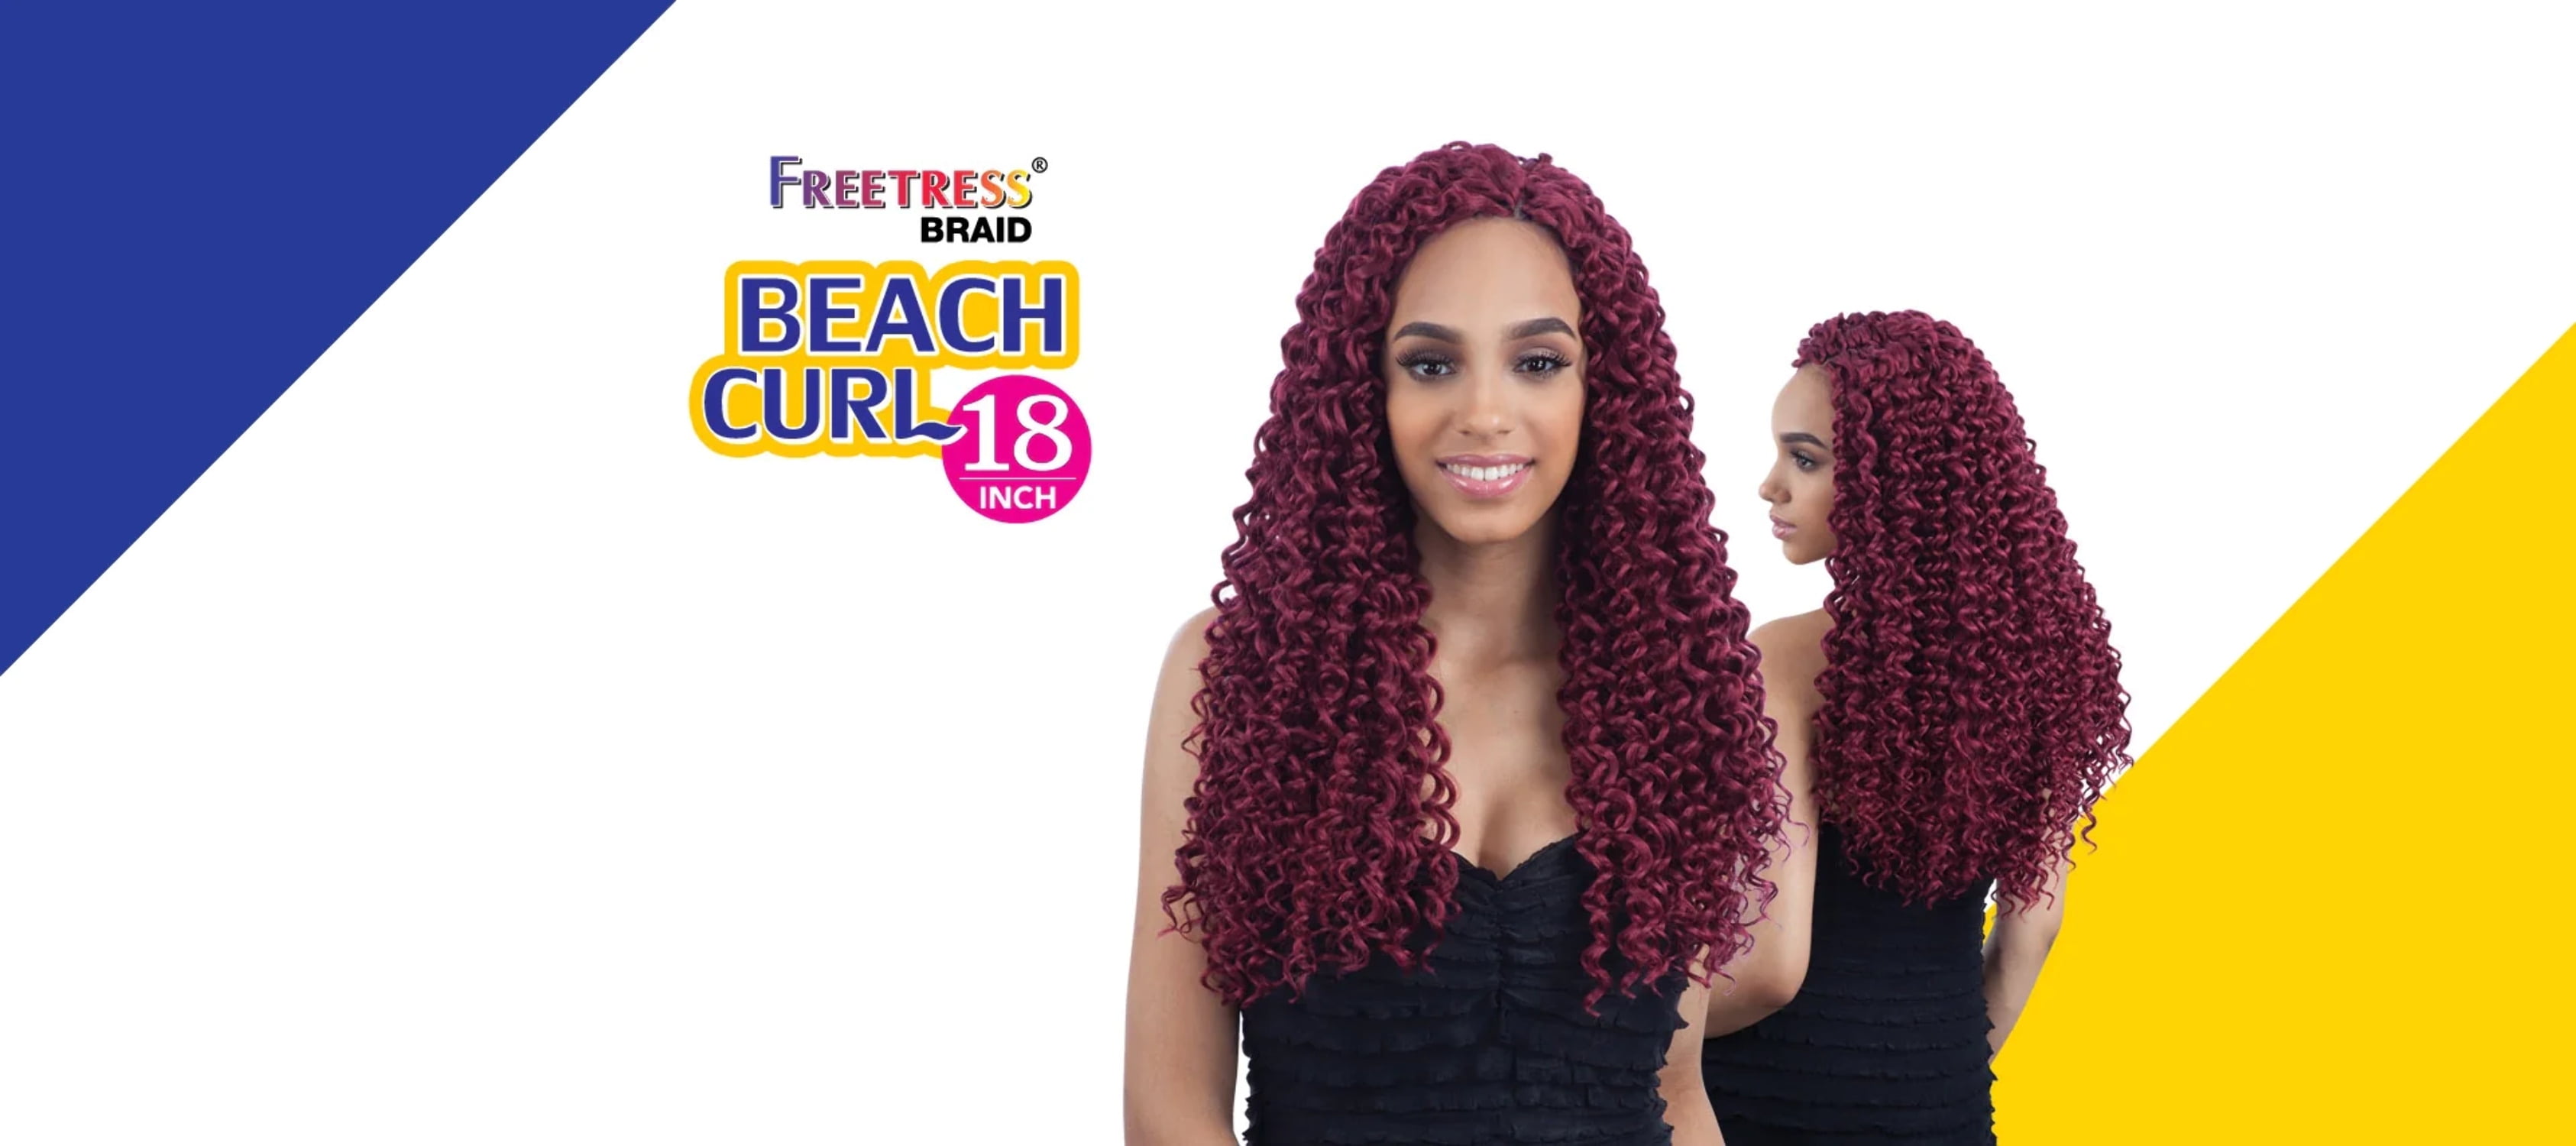 Freetress Braid- Beach Curl 18